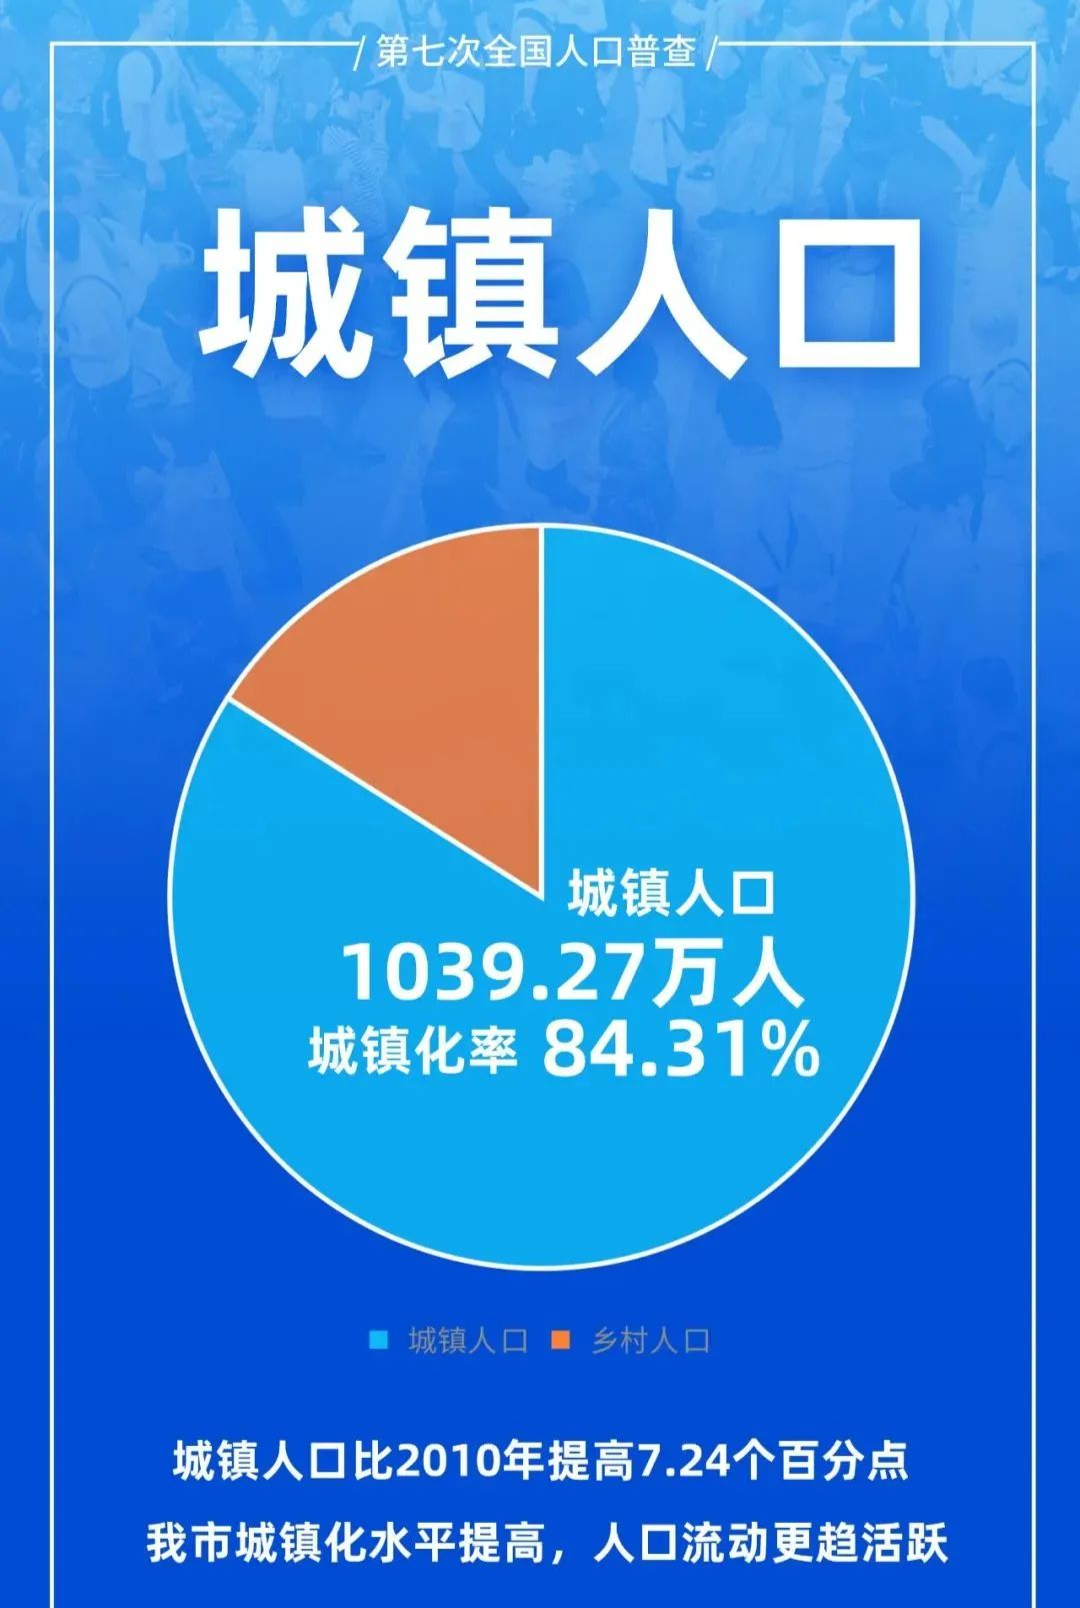 1232万武汉市第七次全国人口普查结果发布